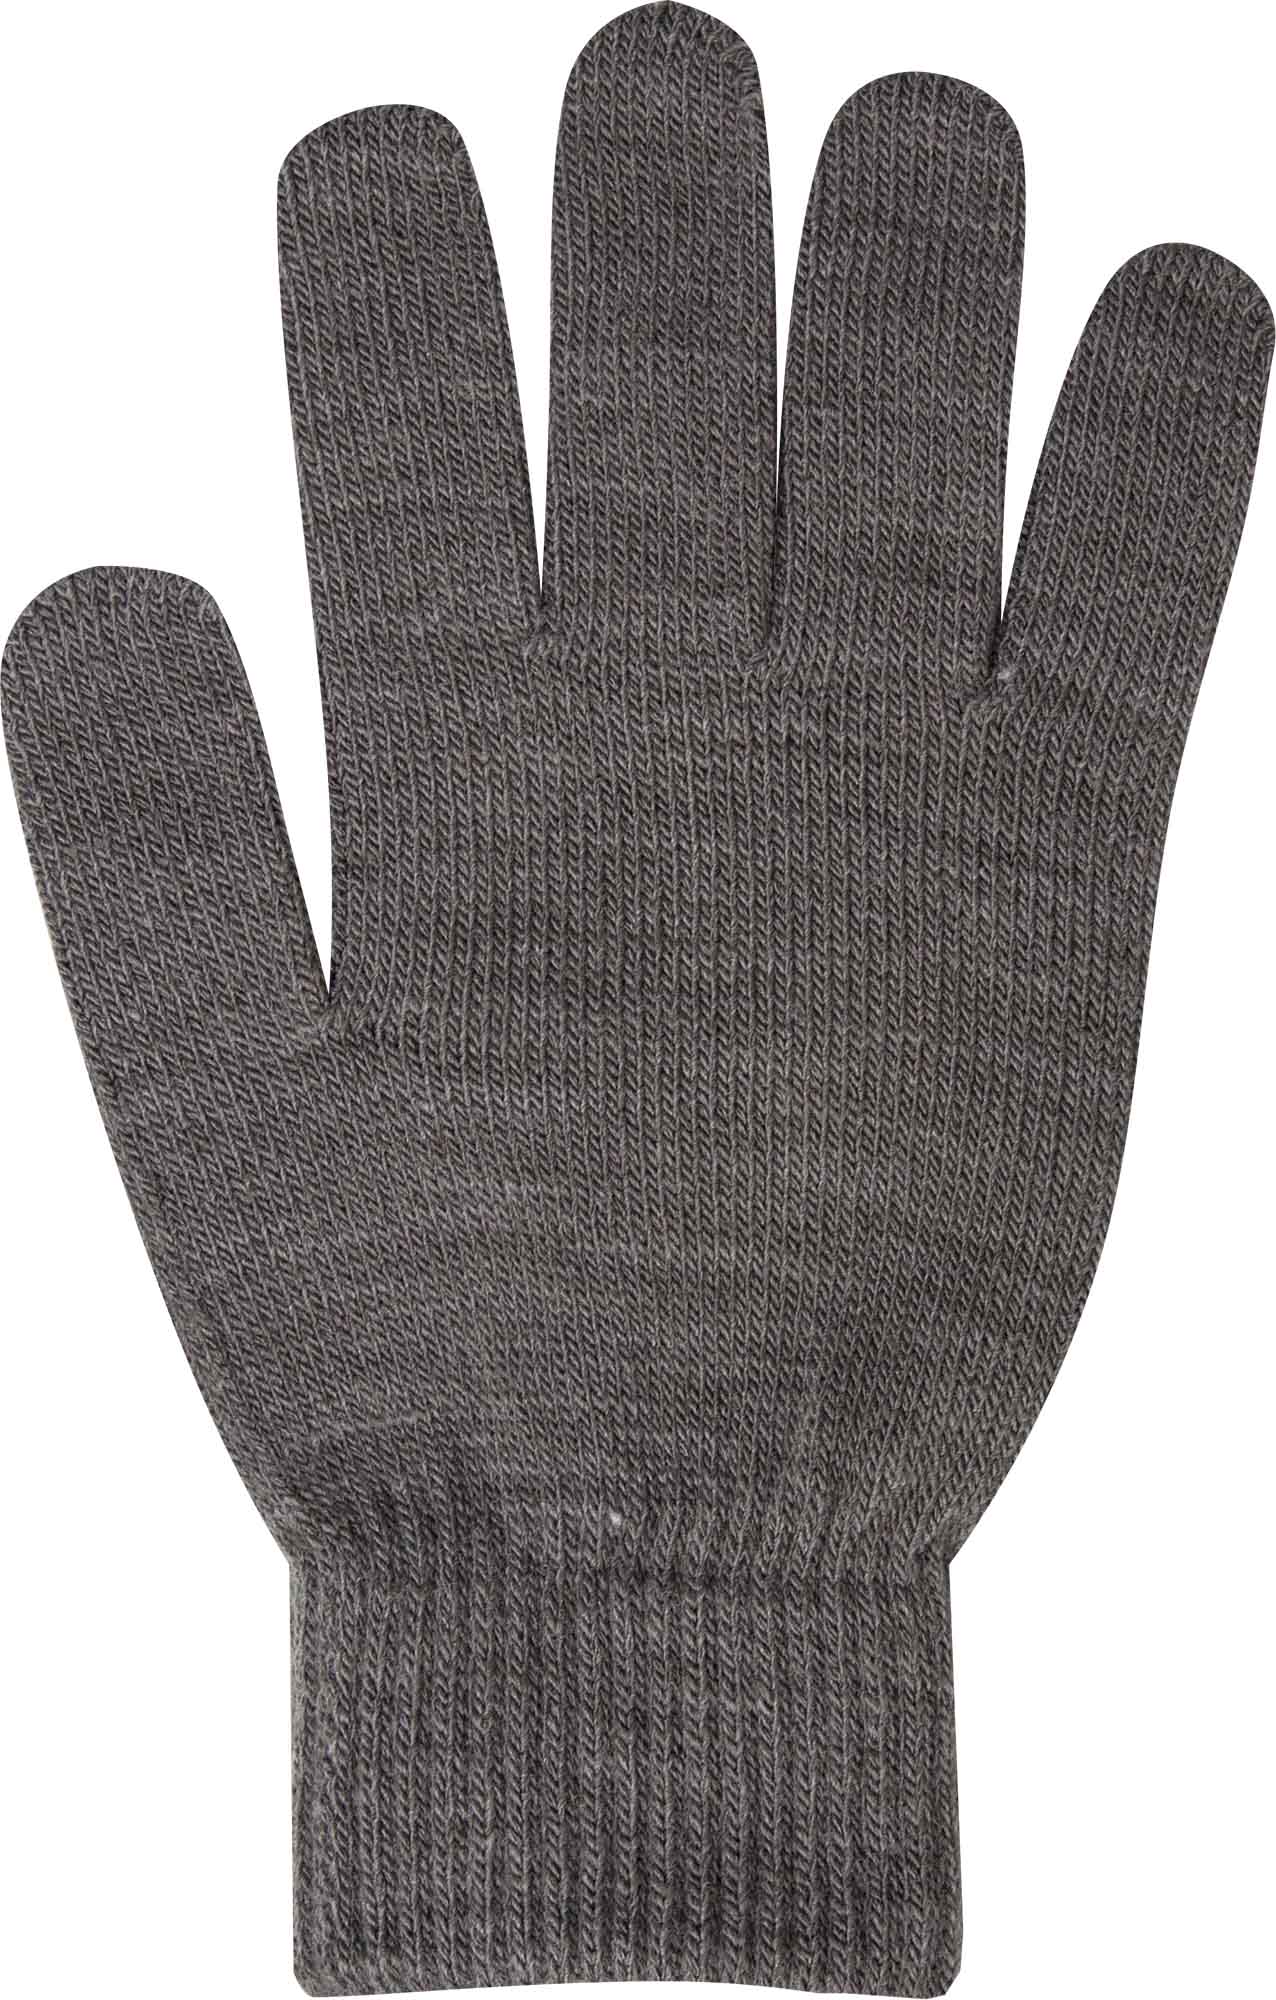 Girls’ knitted gloves